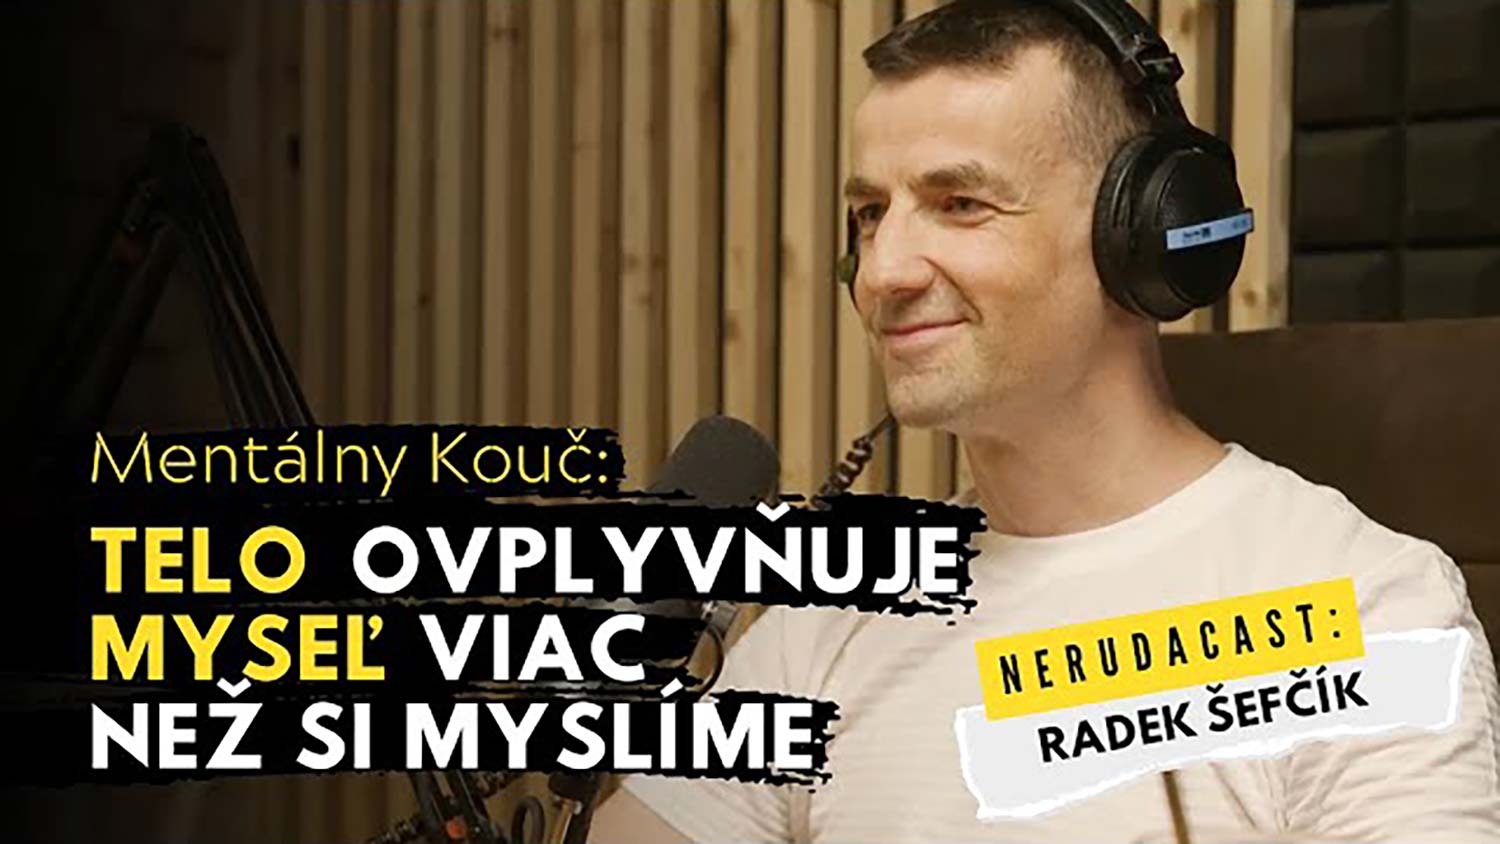 Radek Šefčík v Nerudacast II.